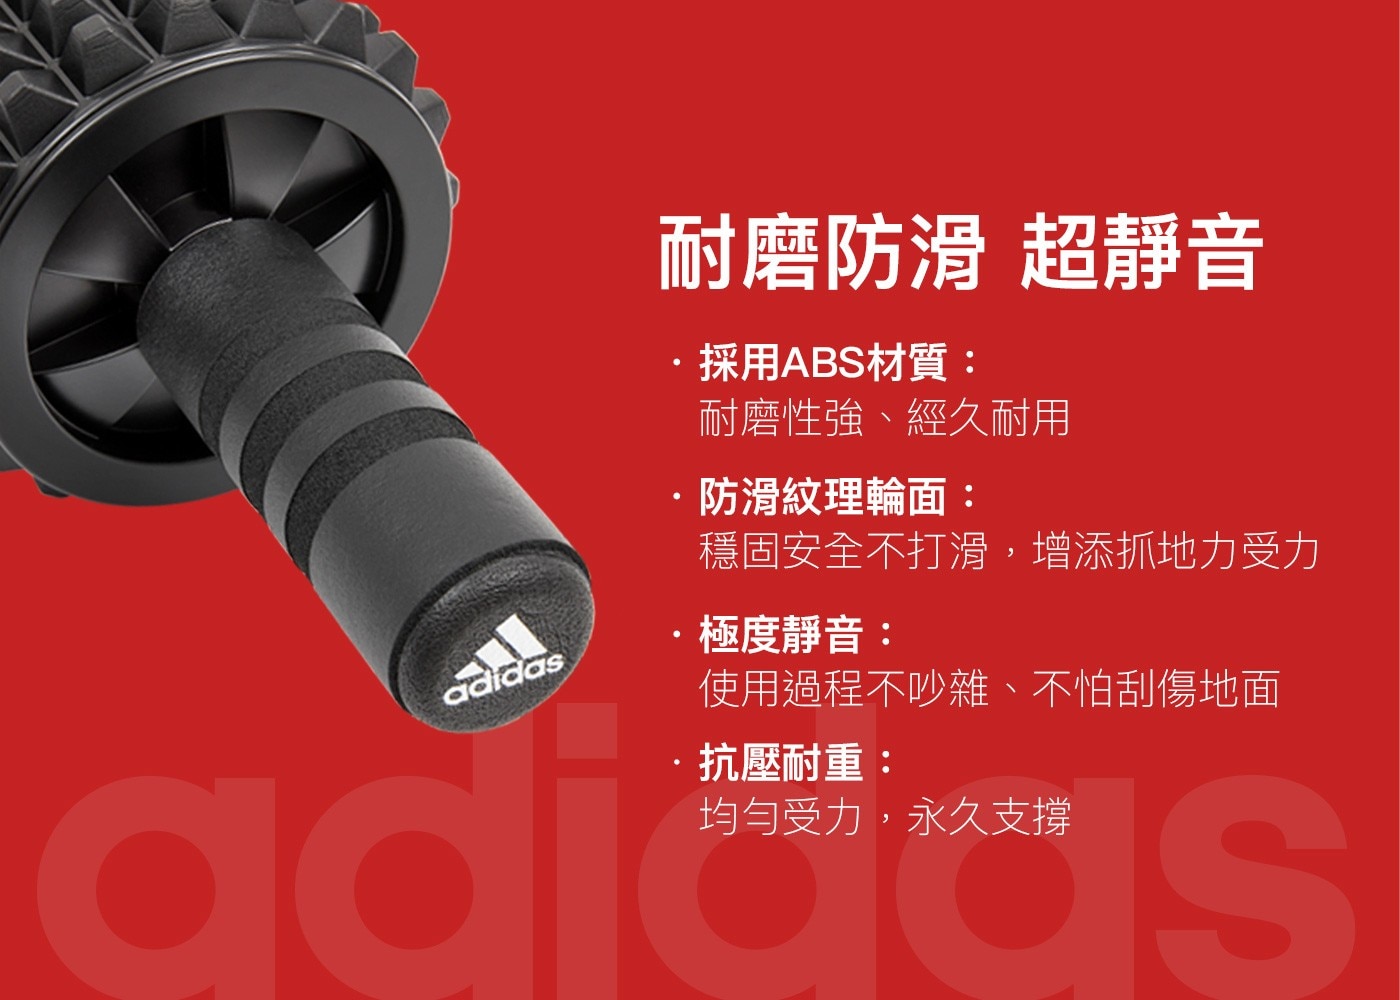 Adidas 複合滾筒健腹輪精準鍛鍊每個部位方向多面的側滑訓練充分讓腰部胸部得到拉伸高效健身成果